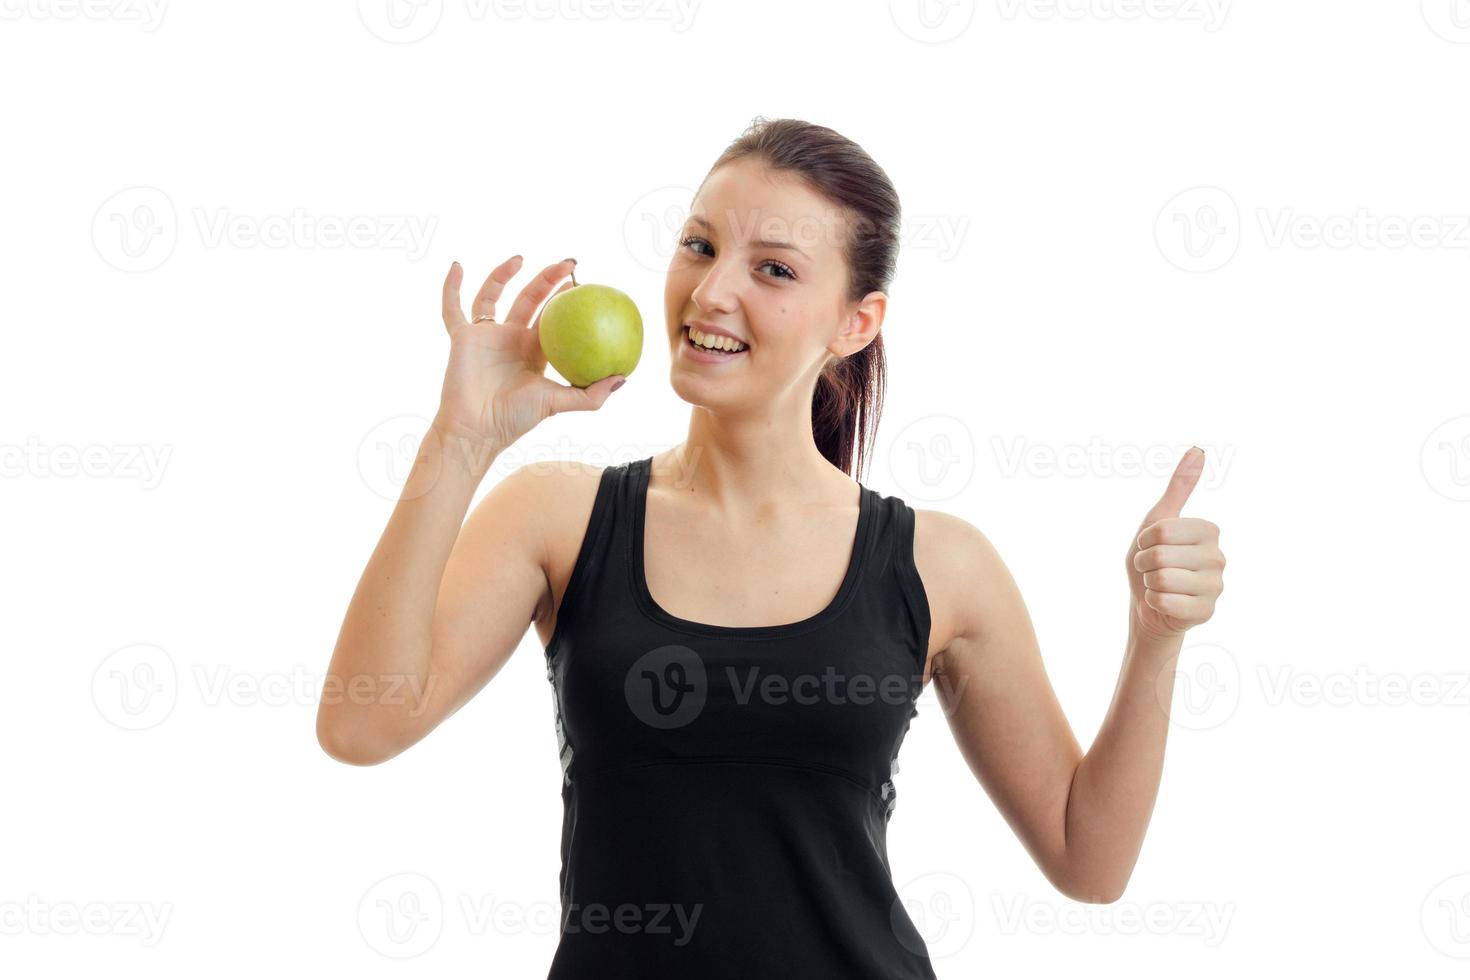 retrato horizontal de una joven delgada con una camiseta negra que sostiene en la mano una manzana verde y muestra clase foto